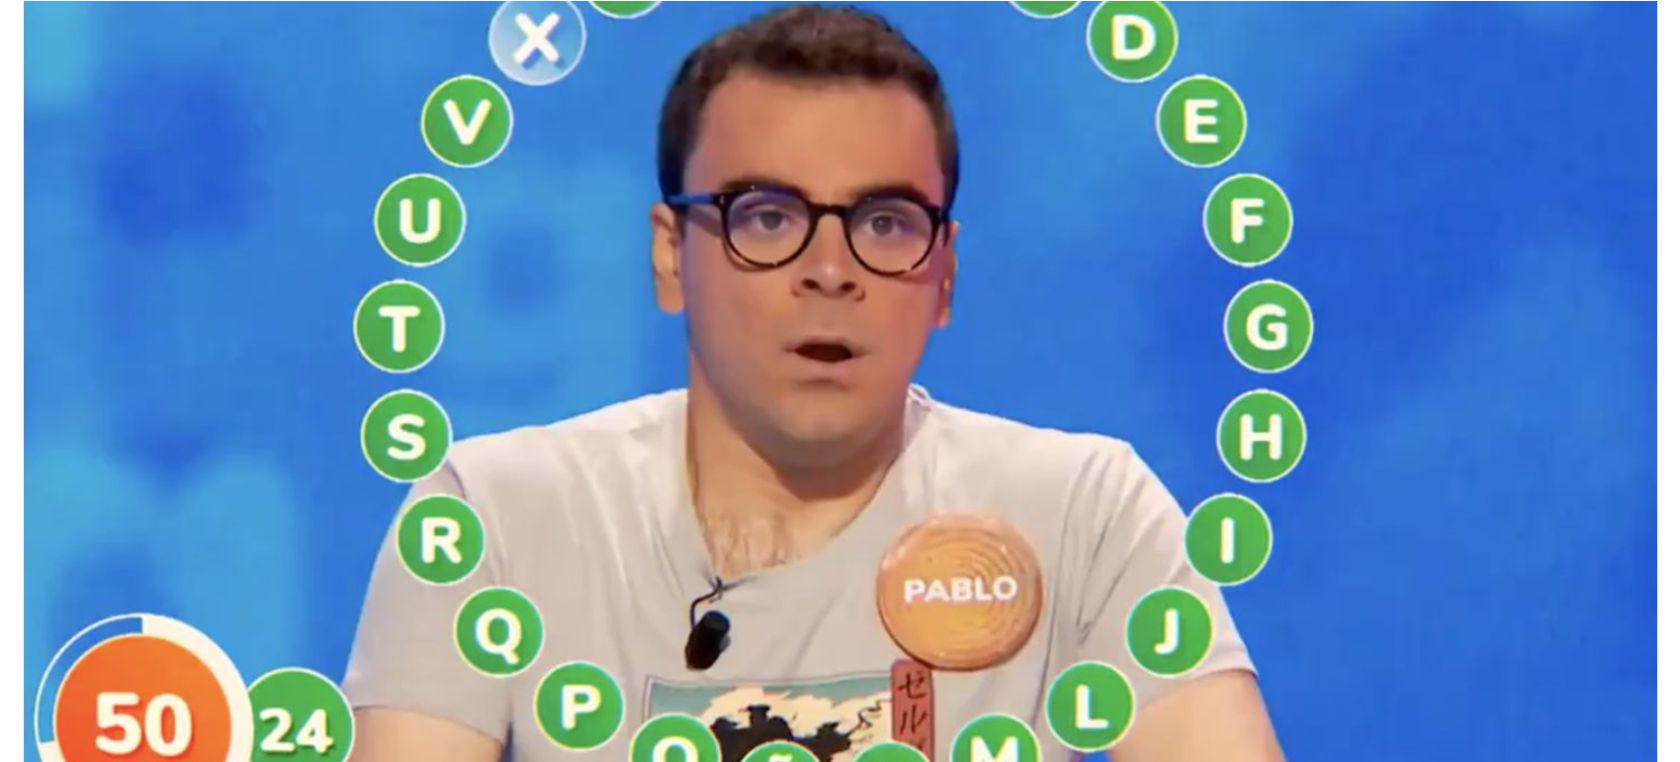 ¿Cuándo se podría llevar Pablo Díaz el bote de 'Pasapalabra' en Antena 3? Las pistas que nos da la promo